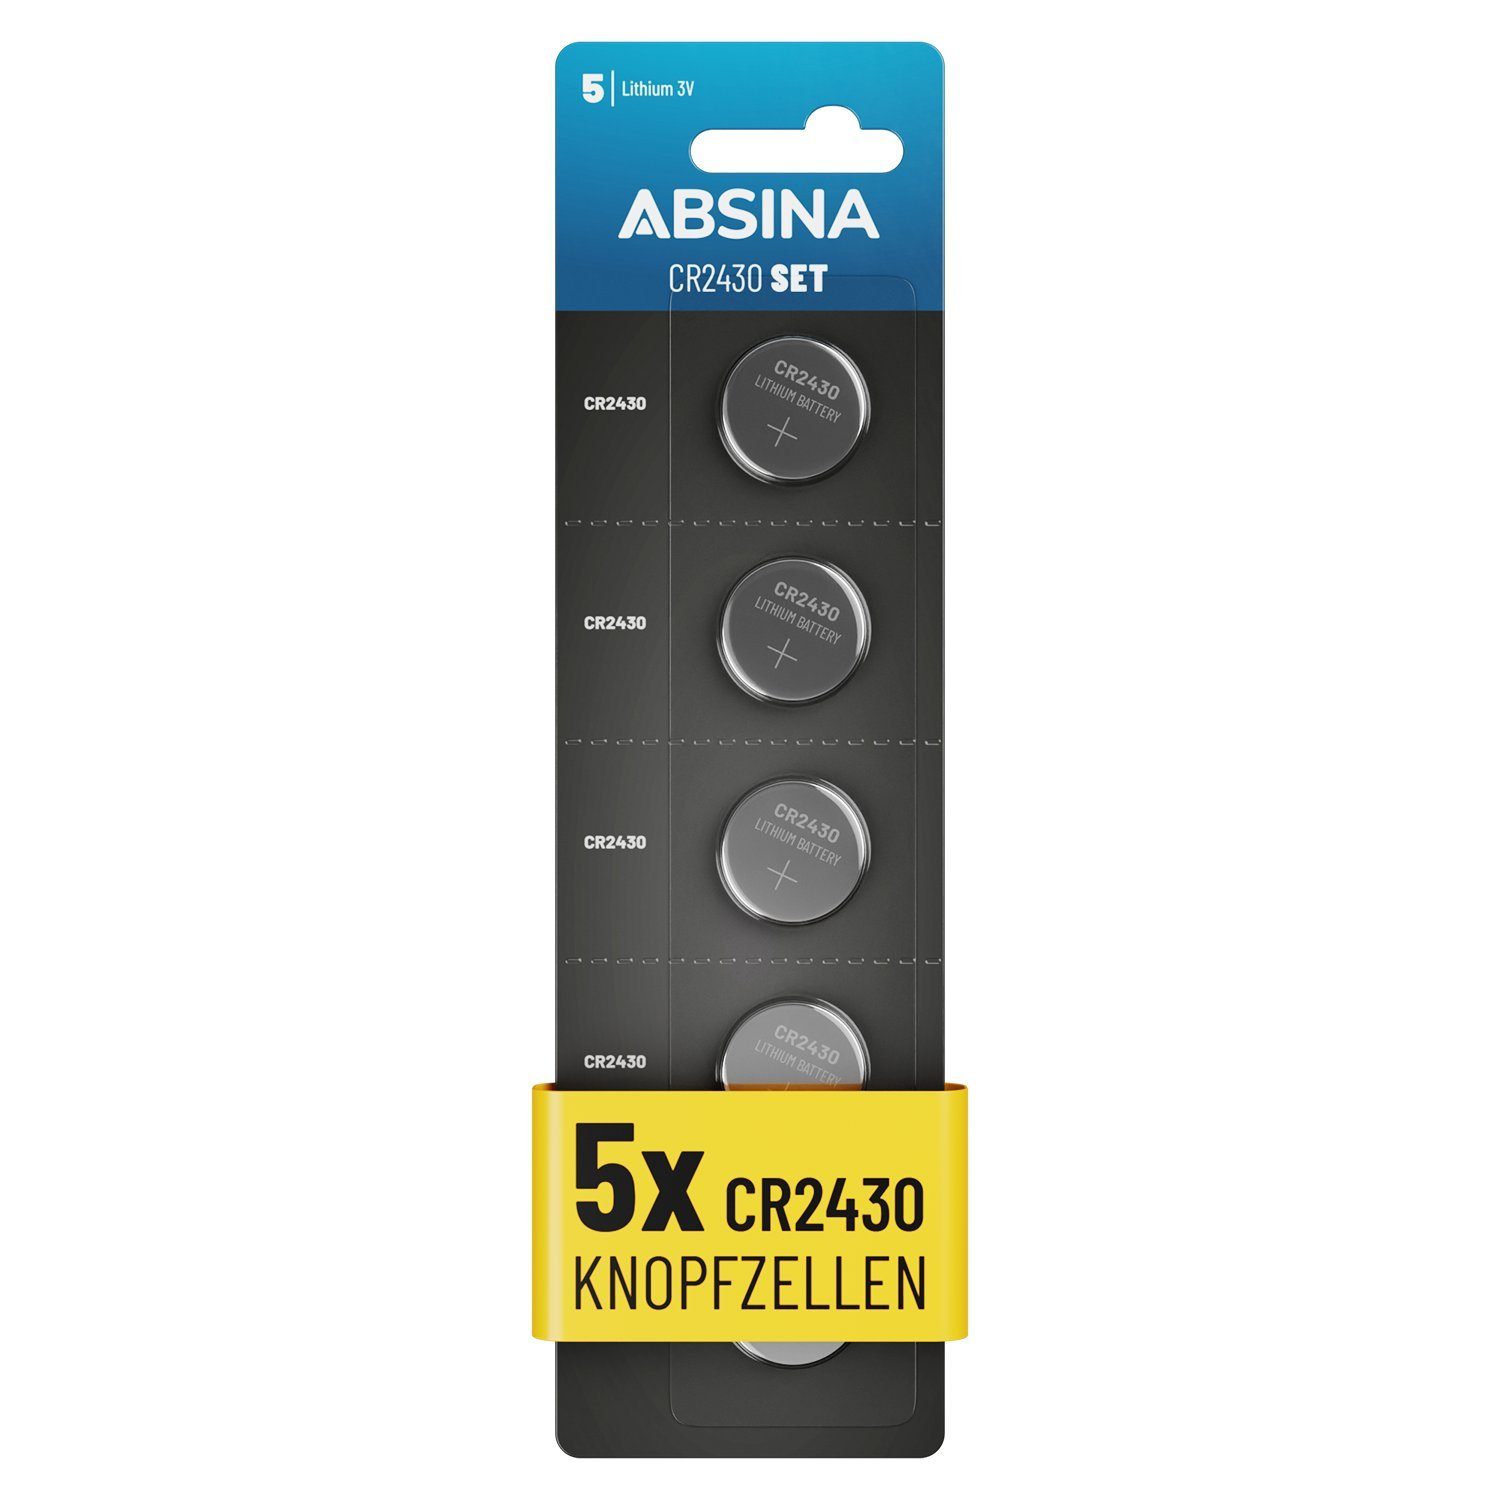 ABSINA CR2430 (1 Knopfbatterie 2430 Knopfzellen, 3V Knopfzelle 5er CR St) - Pack Knopfzelle